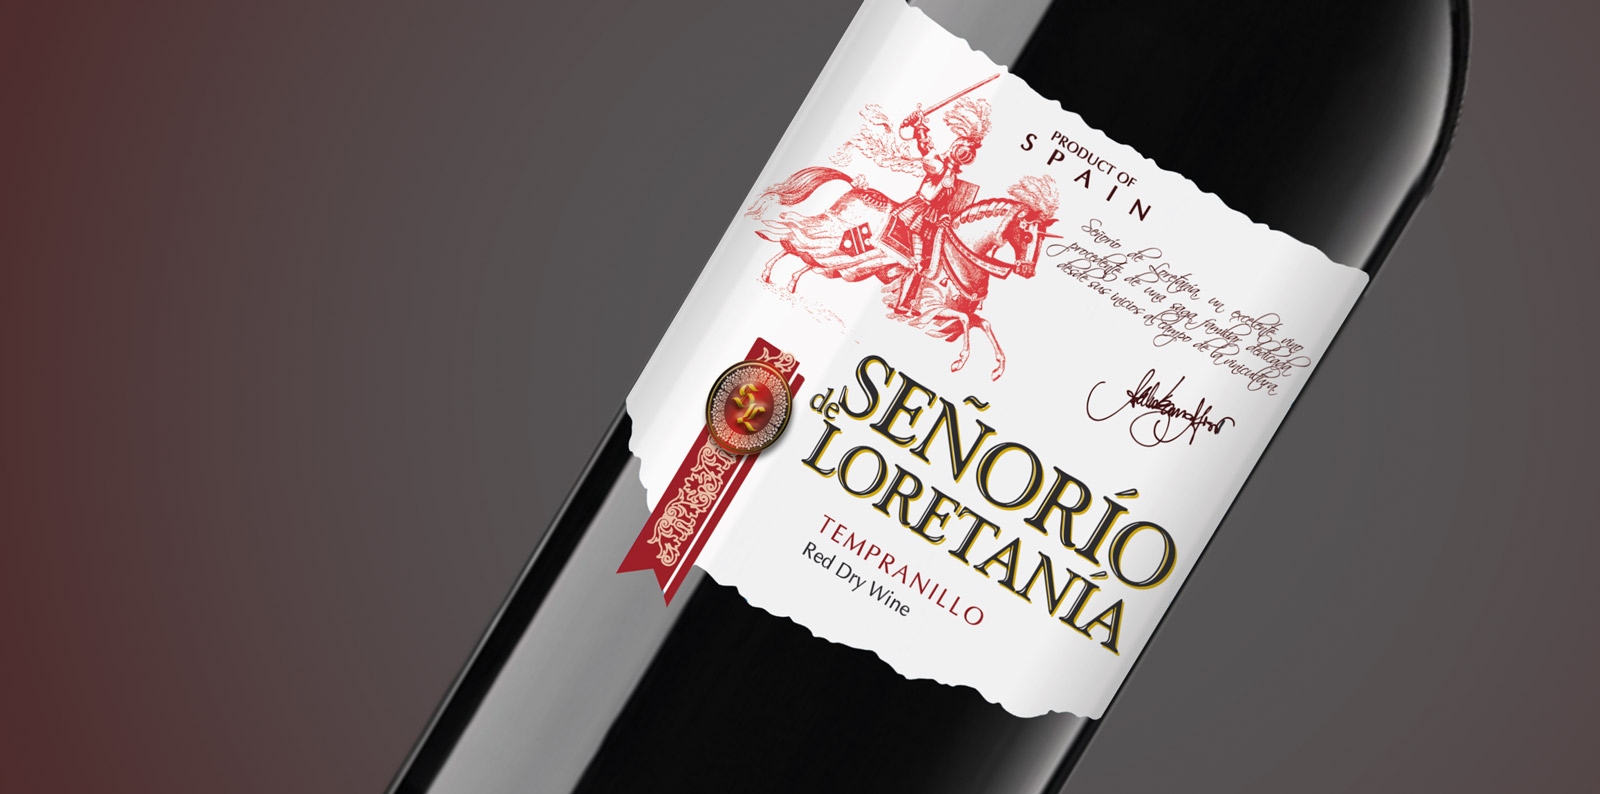 Diseño gráfico y creativo de etiquetas y packaging de vino para SEÑORIO DE LORETANIA